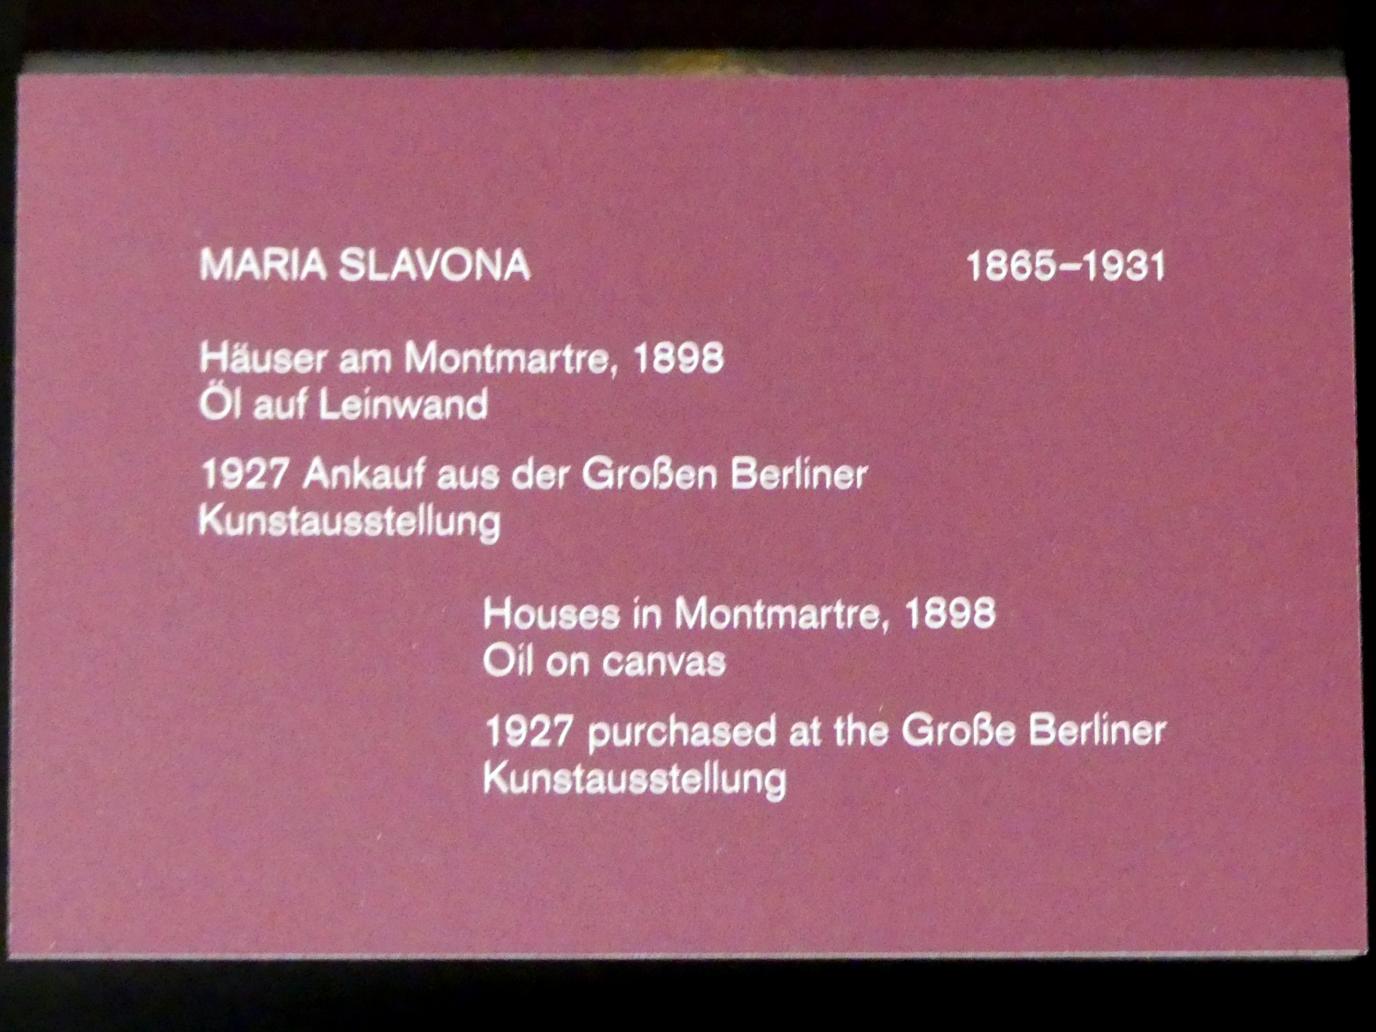 Maria Slavona (1898–1920), Häuser am Montmartre, Berlin, Alte Nationalgalerie, Saal 305, Künstlerinnen der Nationalgalerie vor 1919, 1898, Bild 2/2